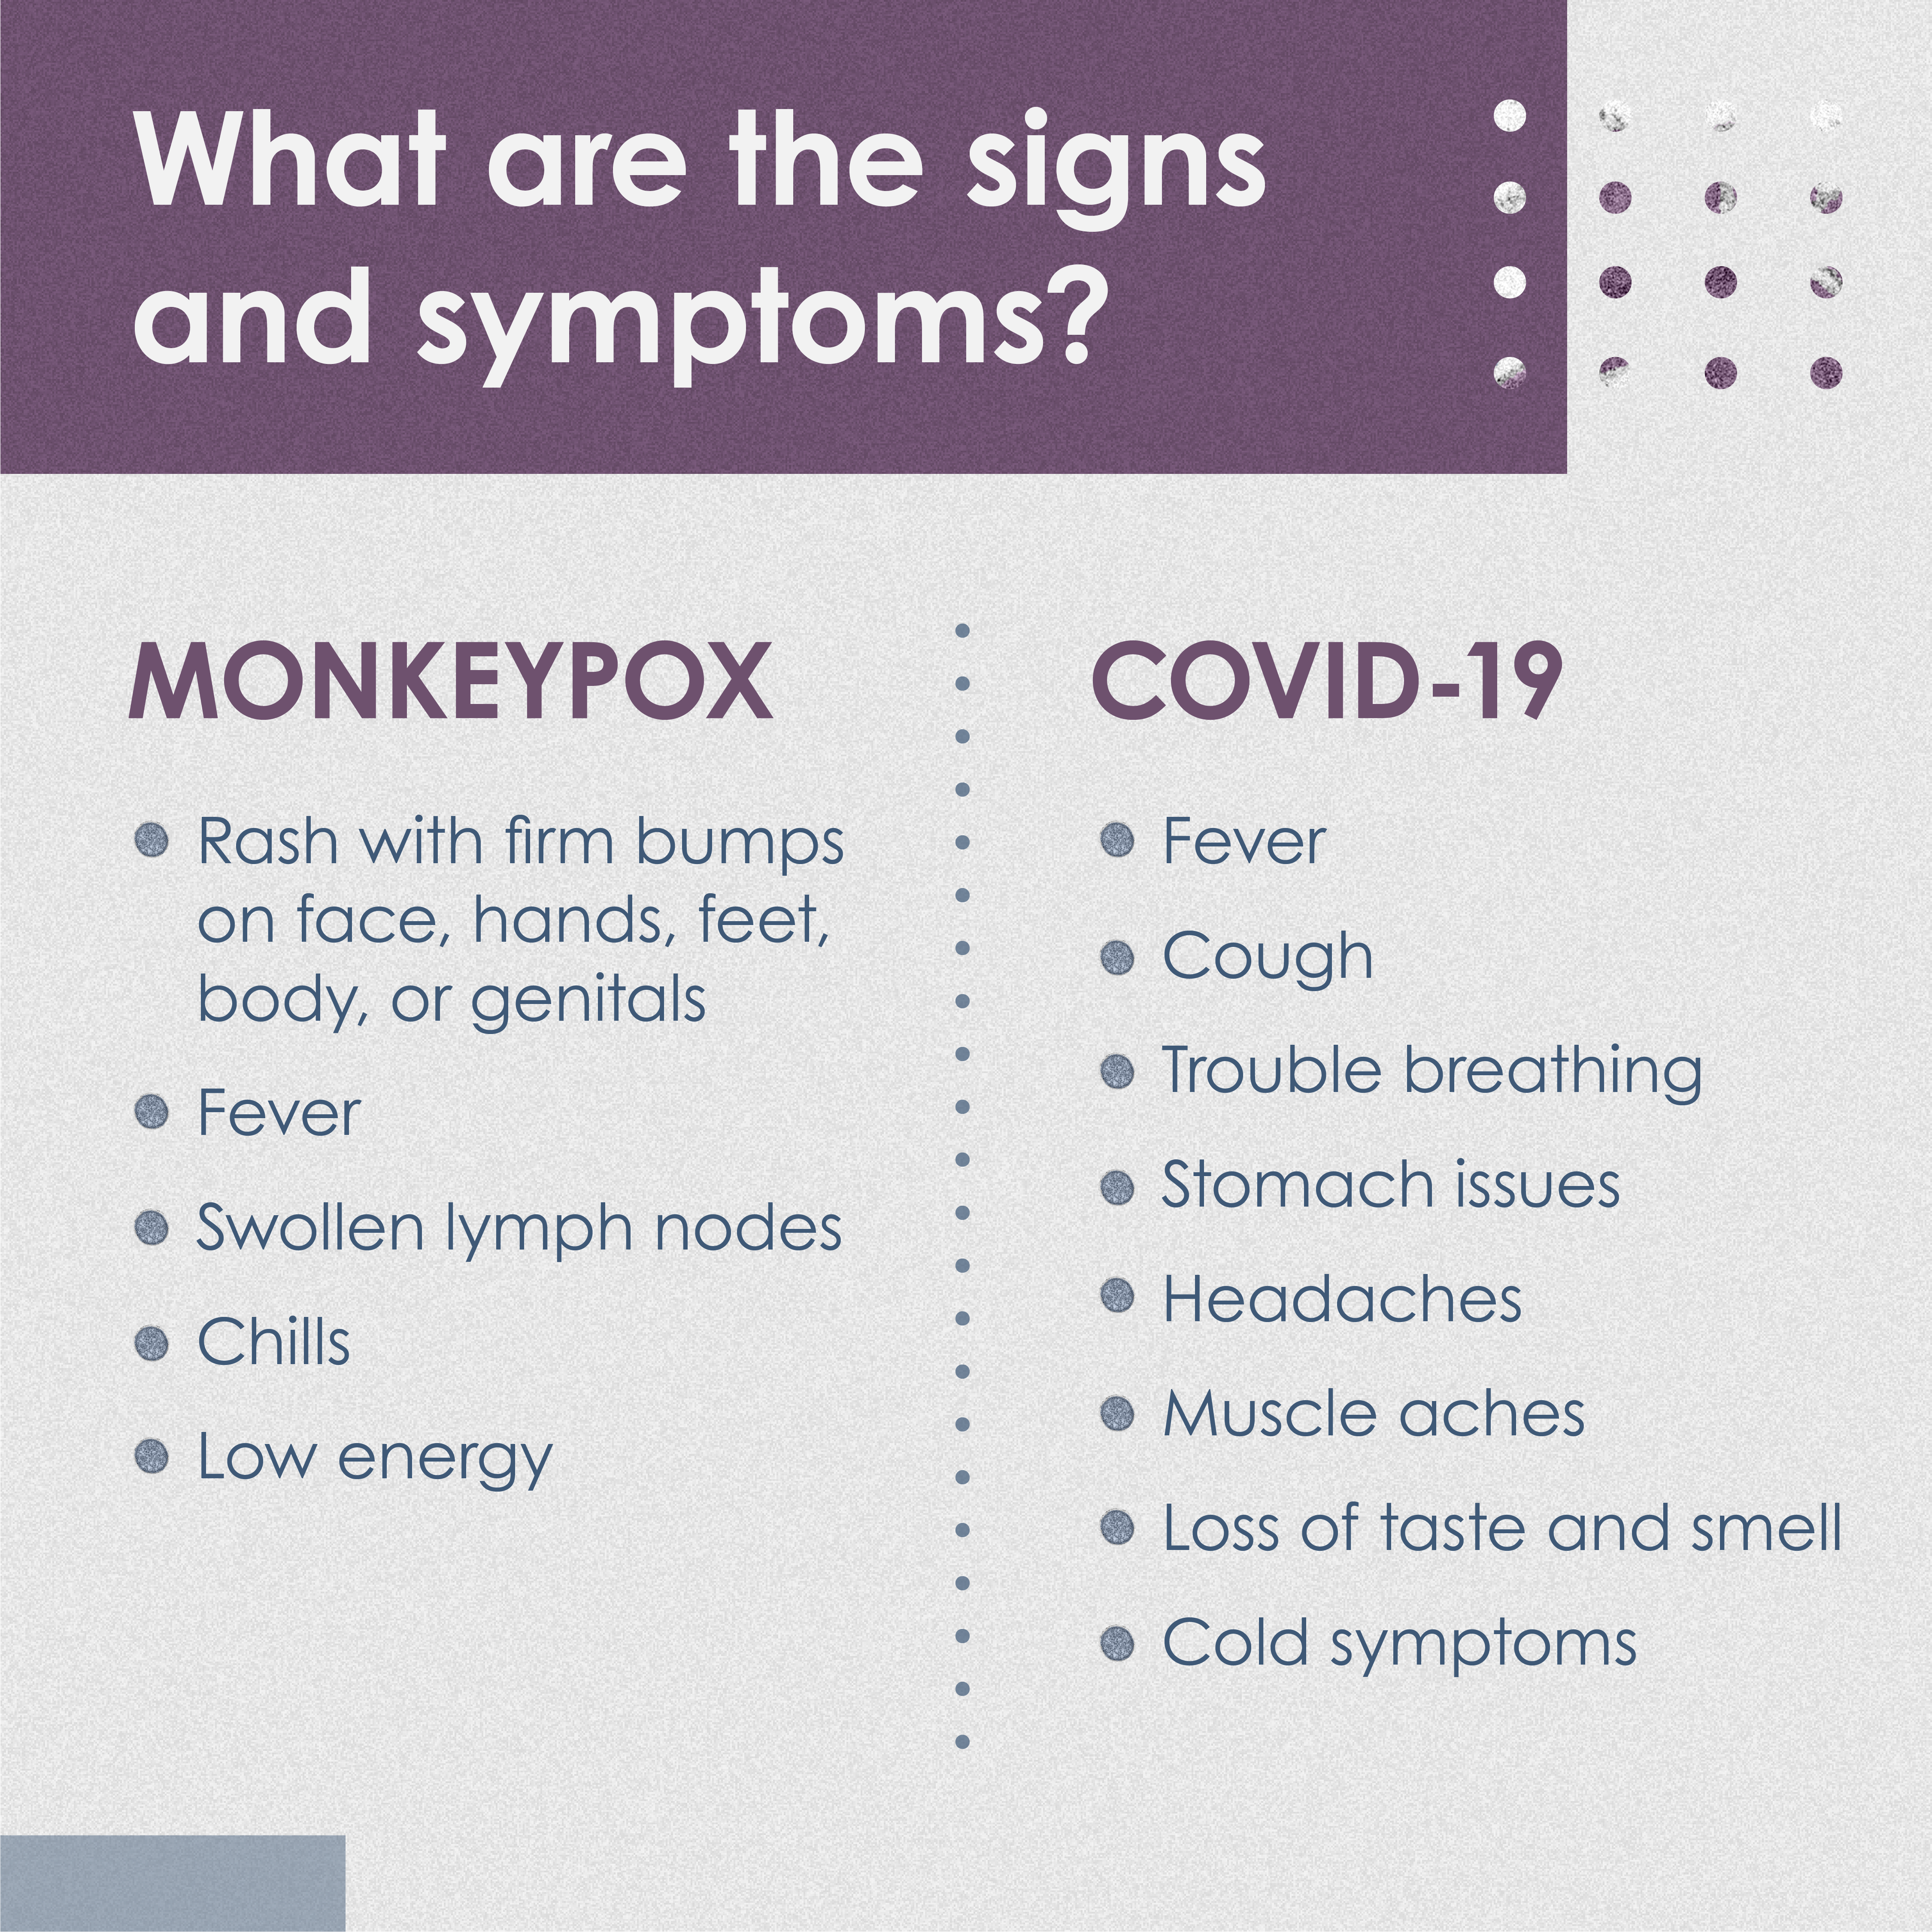 Monkeypox v COVID